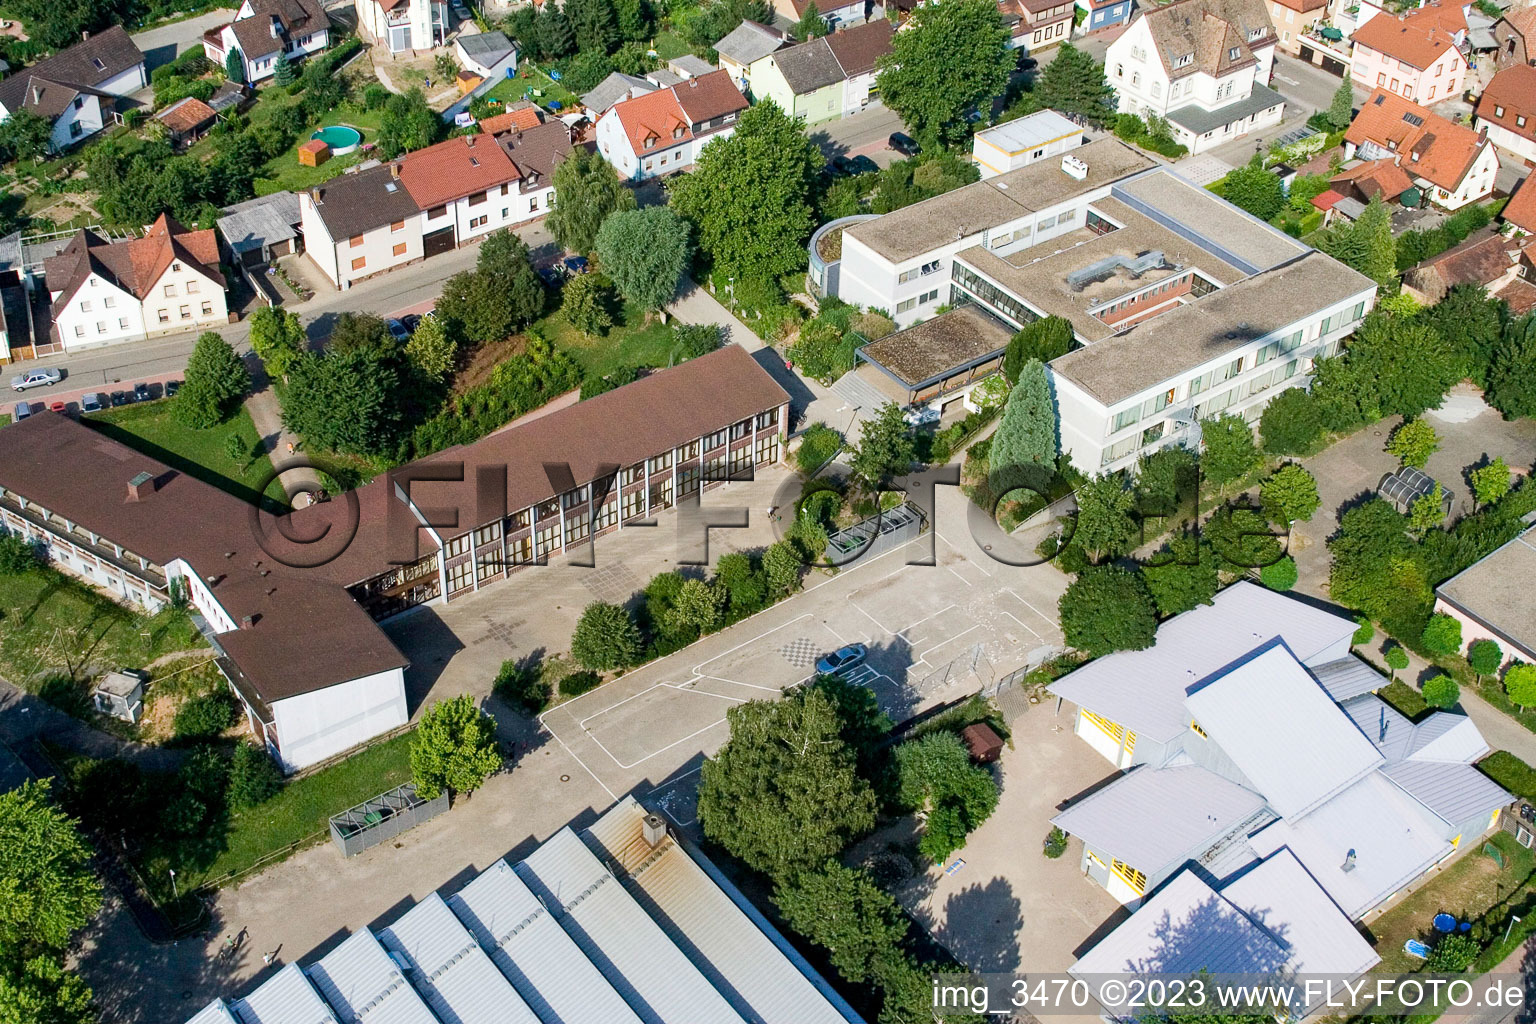 Vue aérienne de École primaire à le quartier Berghausen in Pfinztal dans le département Bade-Wurtemberg, Allemagne